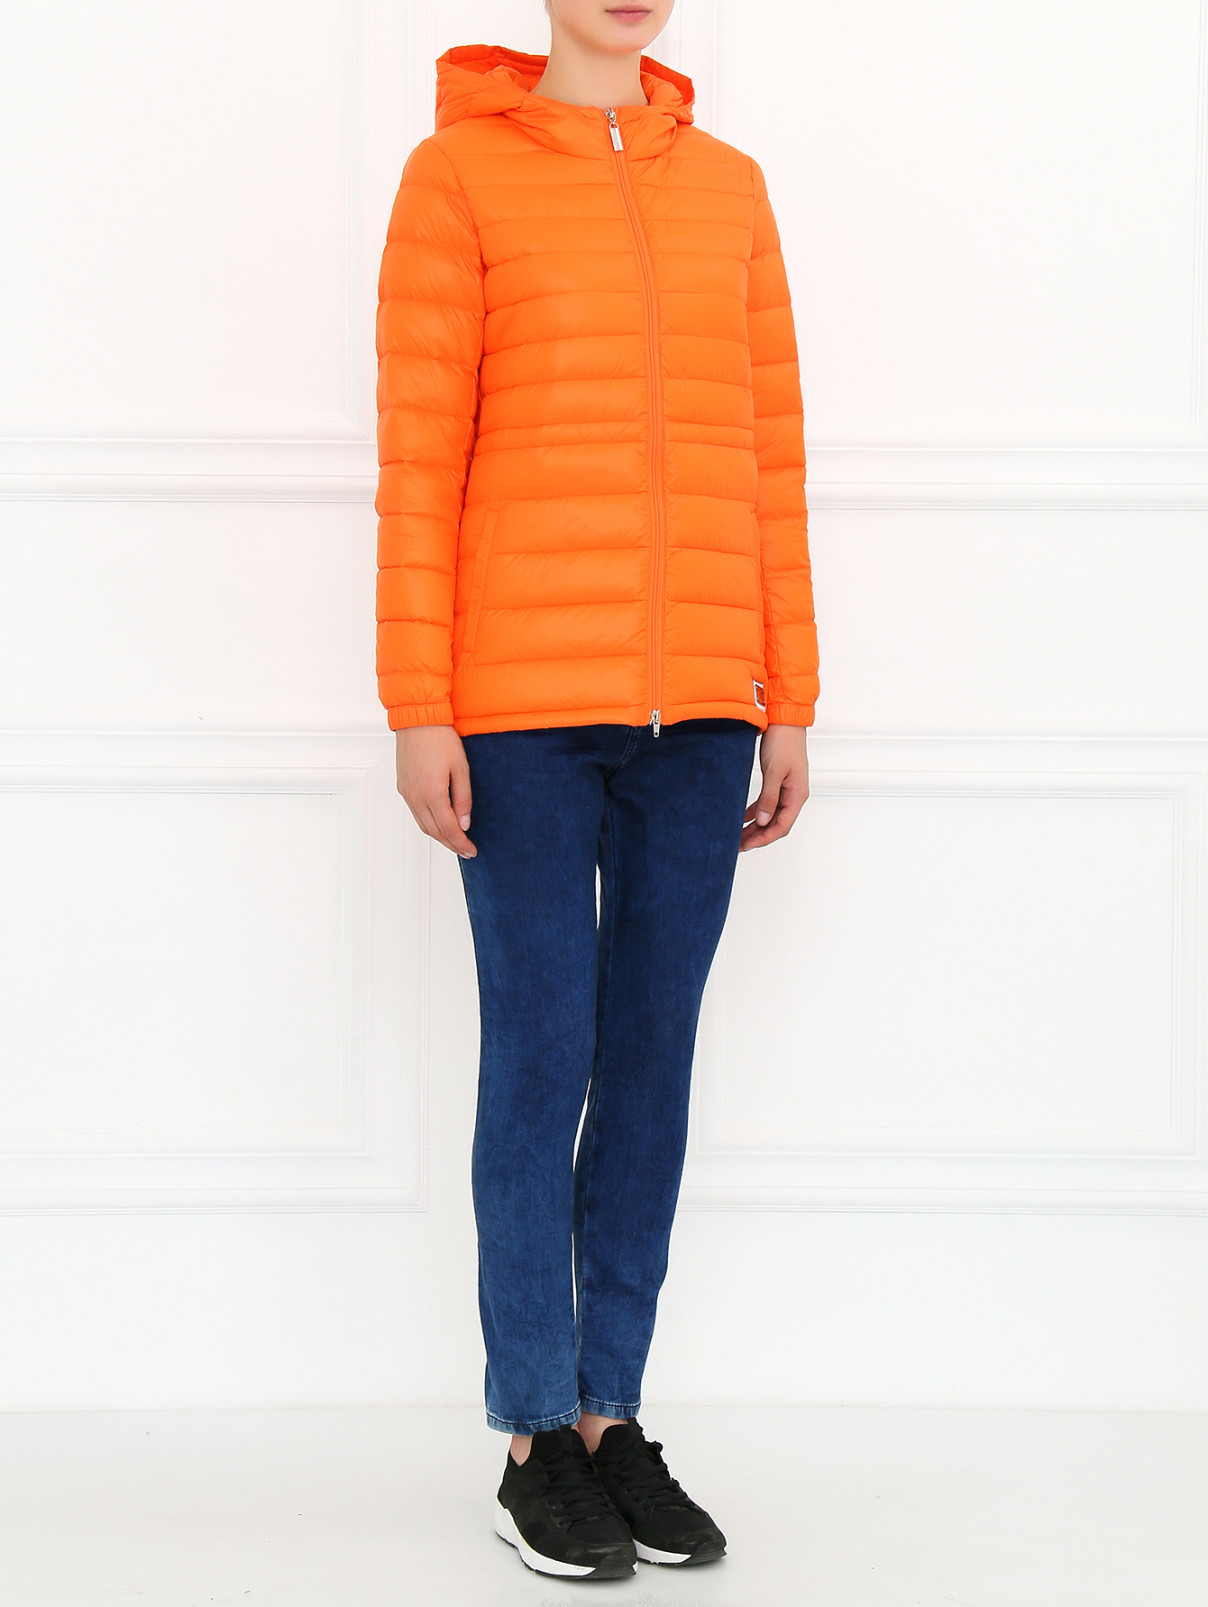 Куртка на молнии с капюшоном Parah  –  Модель Общий вид  – Цвет:  Оранжевый